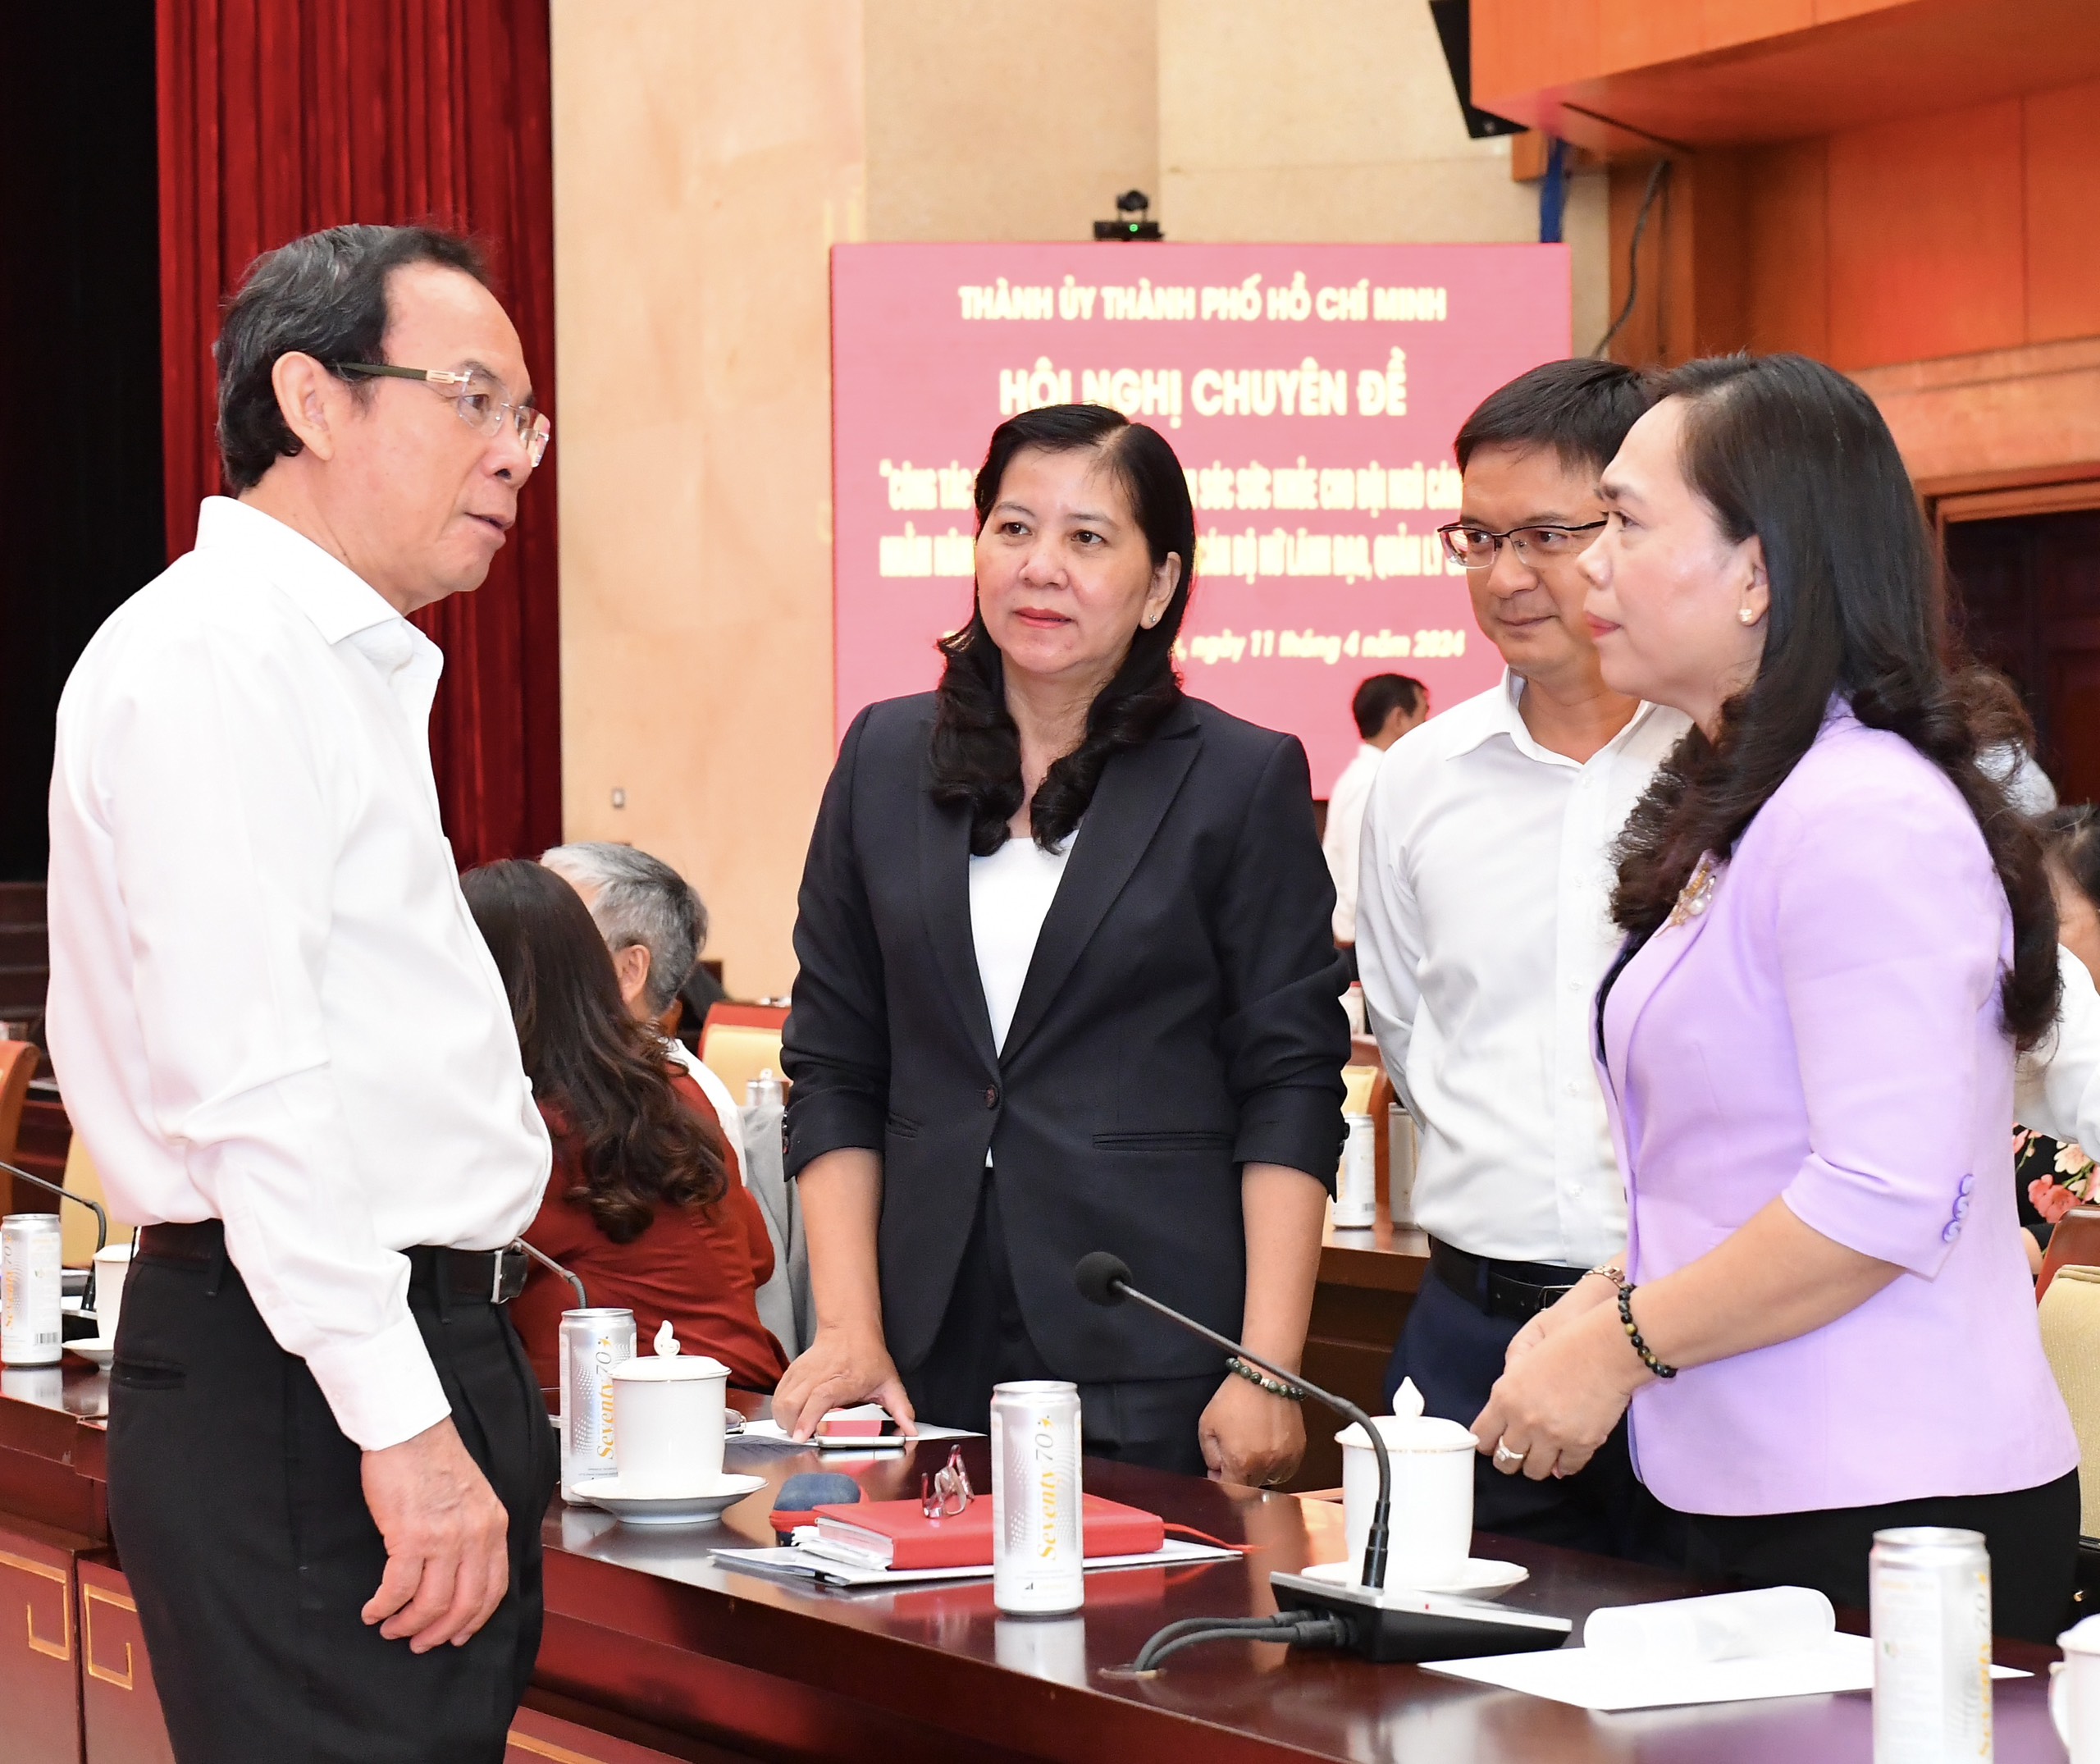 Bí thư Nguyễn Văn Nên trao đổi với các đại biểu dự hội nghị (Ảnh: Việt Dũng).